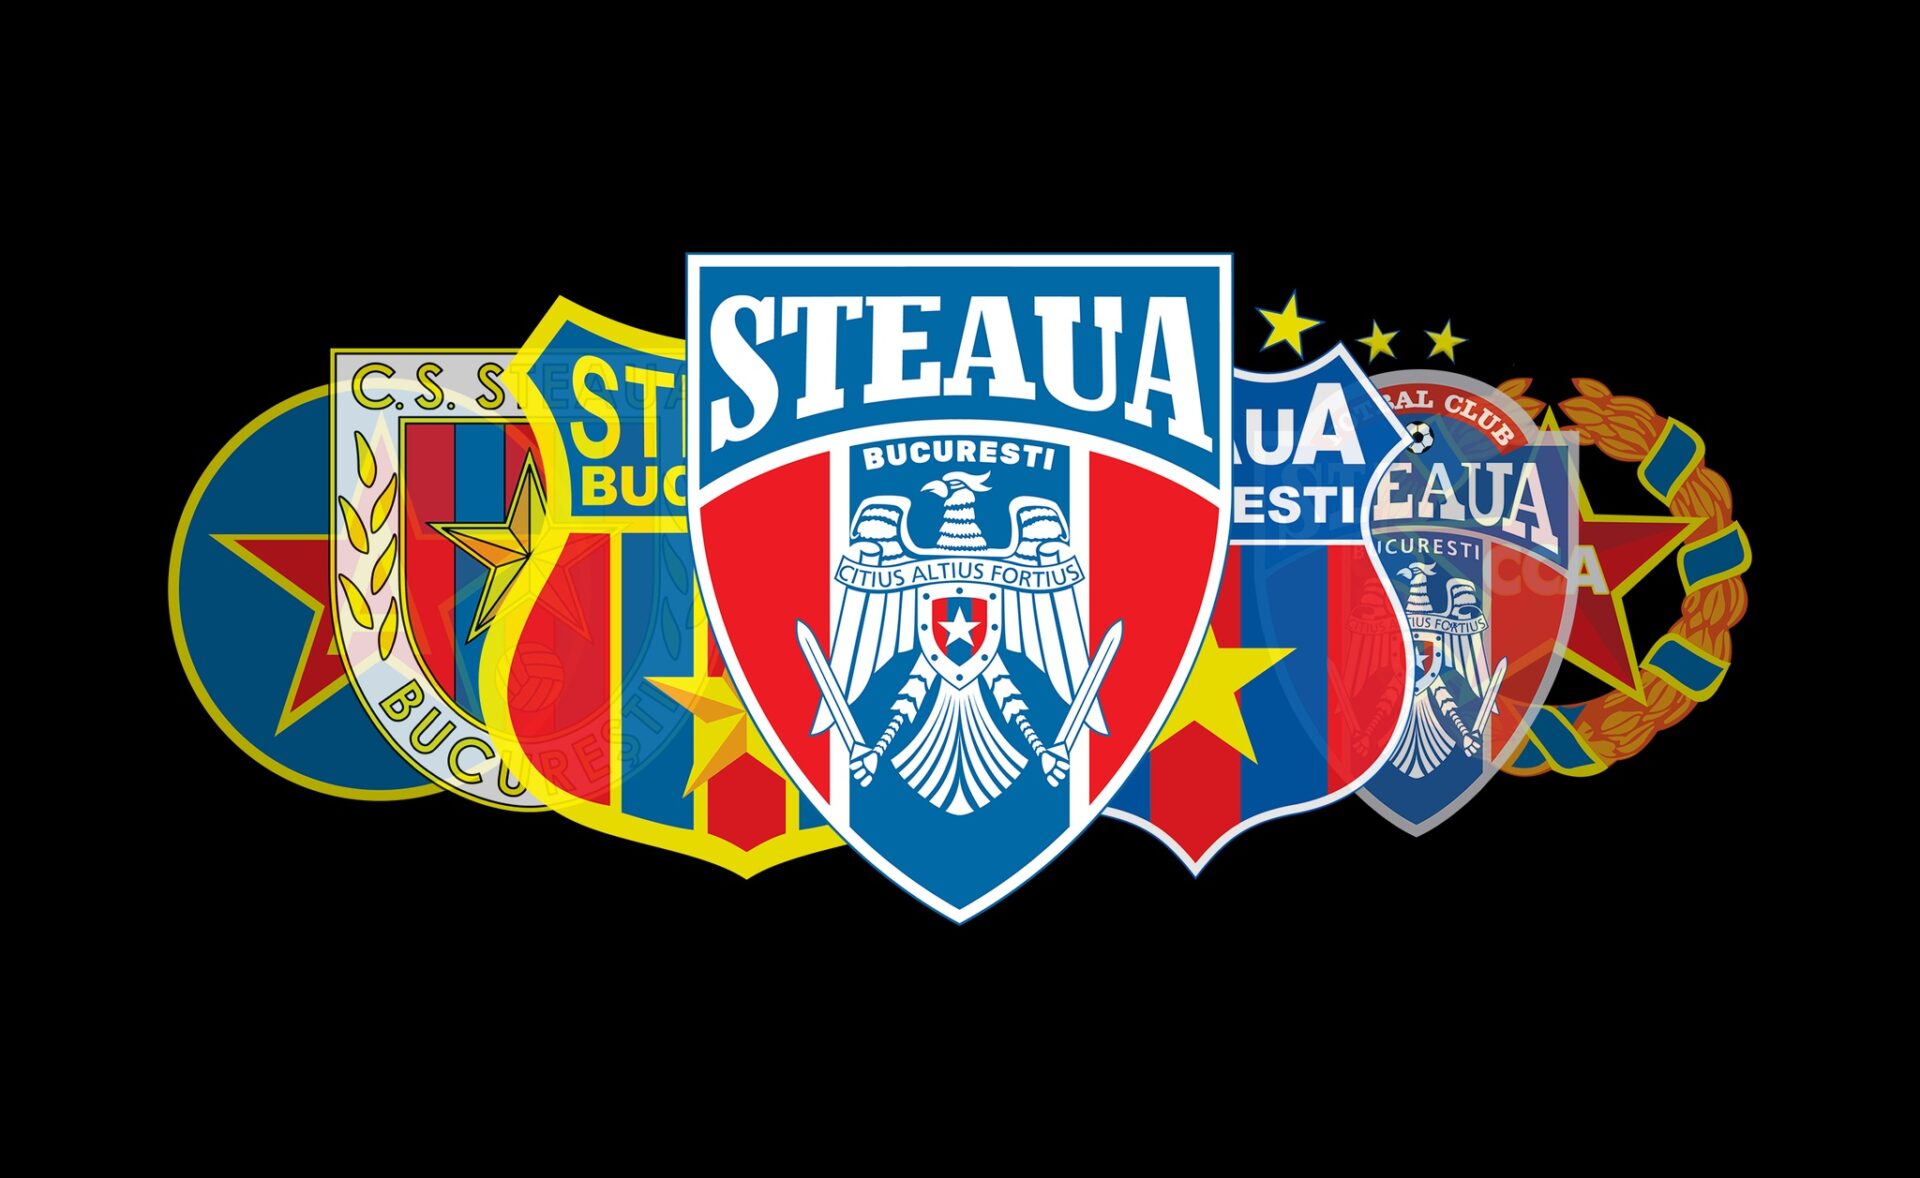 Probleme mari la CSA Steaua din cauza ultimelor evenimente petrecute la nivel legislativ. Sursă: Facebook / Steaua București